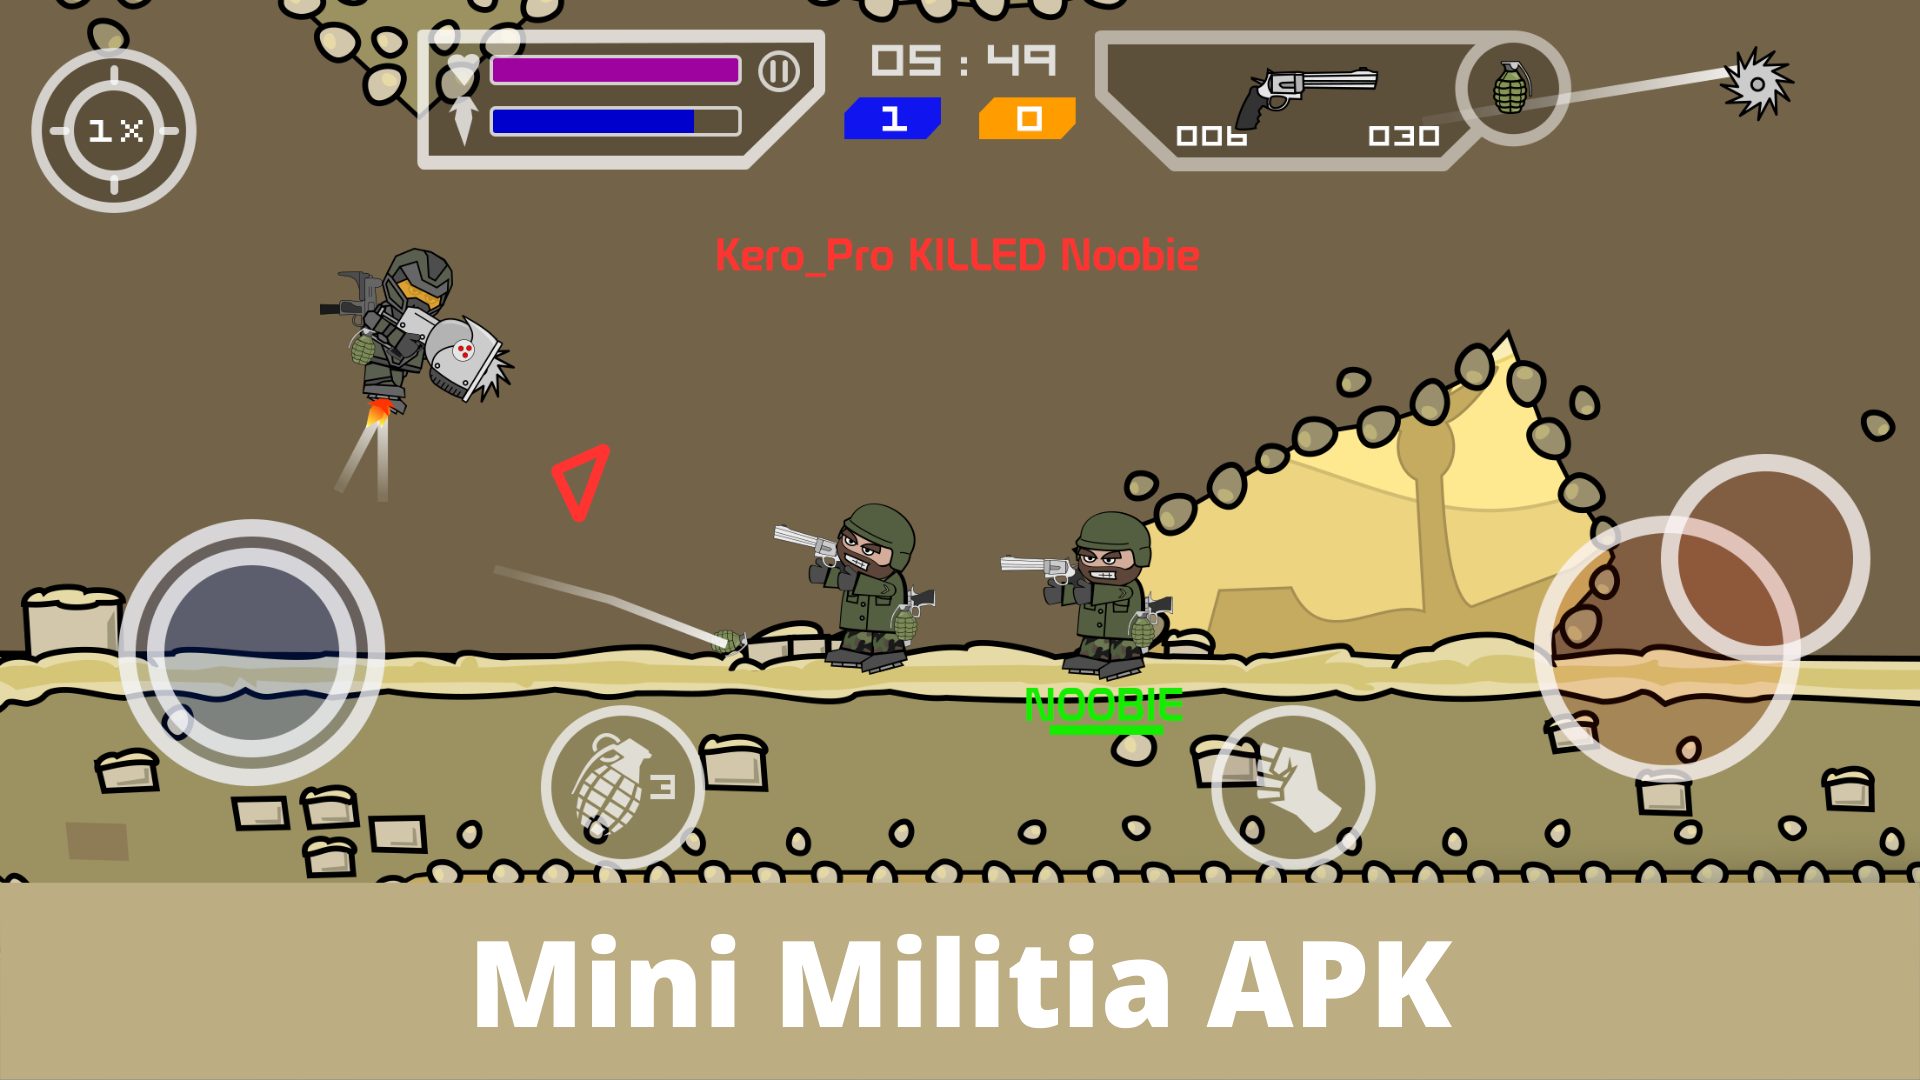 Mini Militia APK